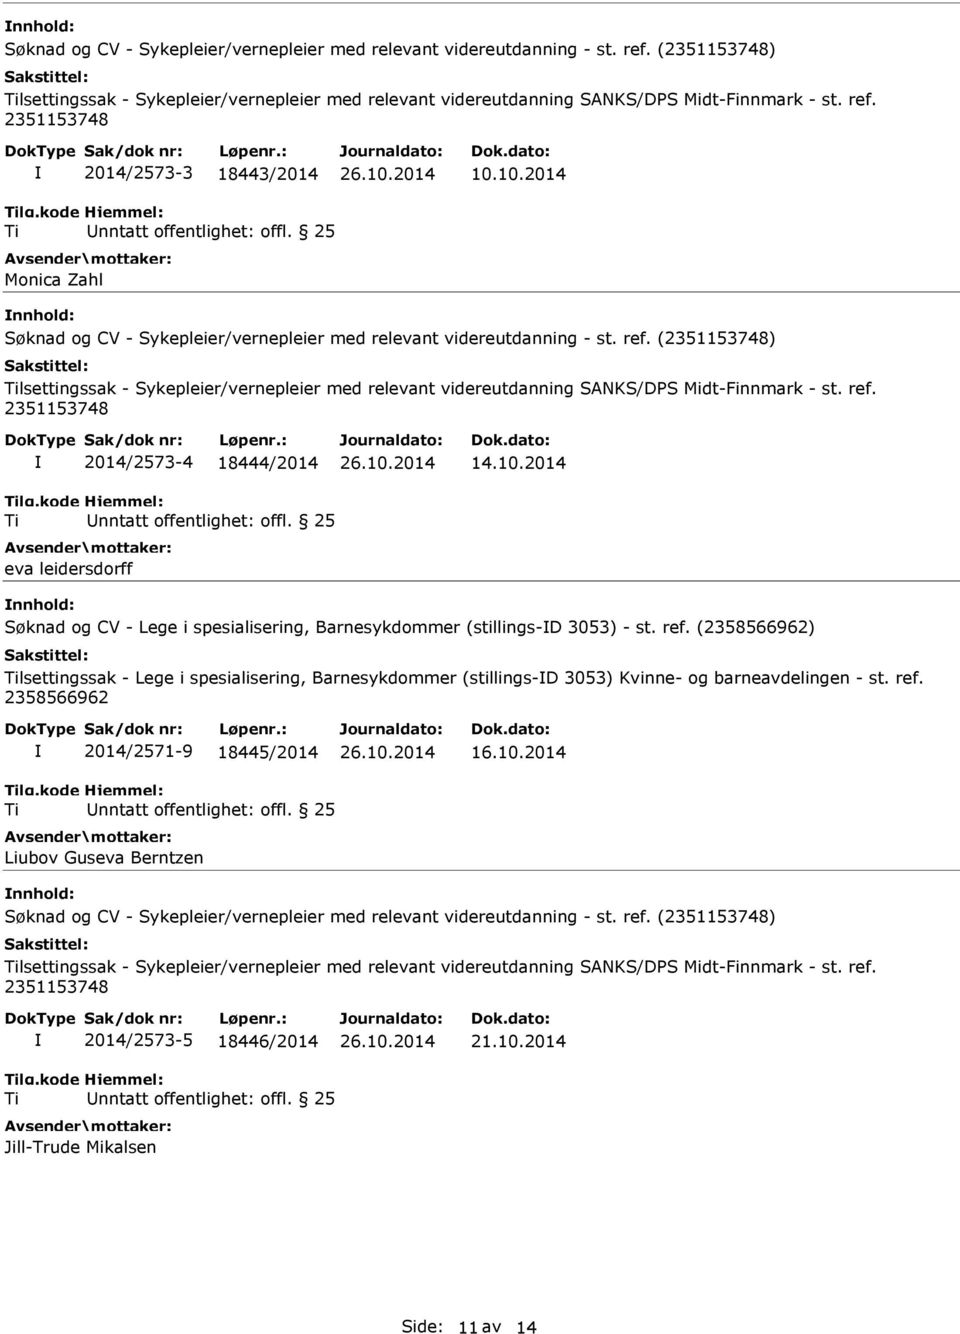 (2351153748) lsettingssak - Sykepleier/vernepleier med relevant videreutdanning SANKS/DPS Midt-Finnmark - st. ref. 2351153748 2014/2573-4 18444/2014 nntatt offentlighet: offl. 25 eva leidersdorff 14.